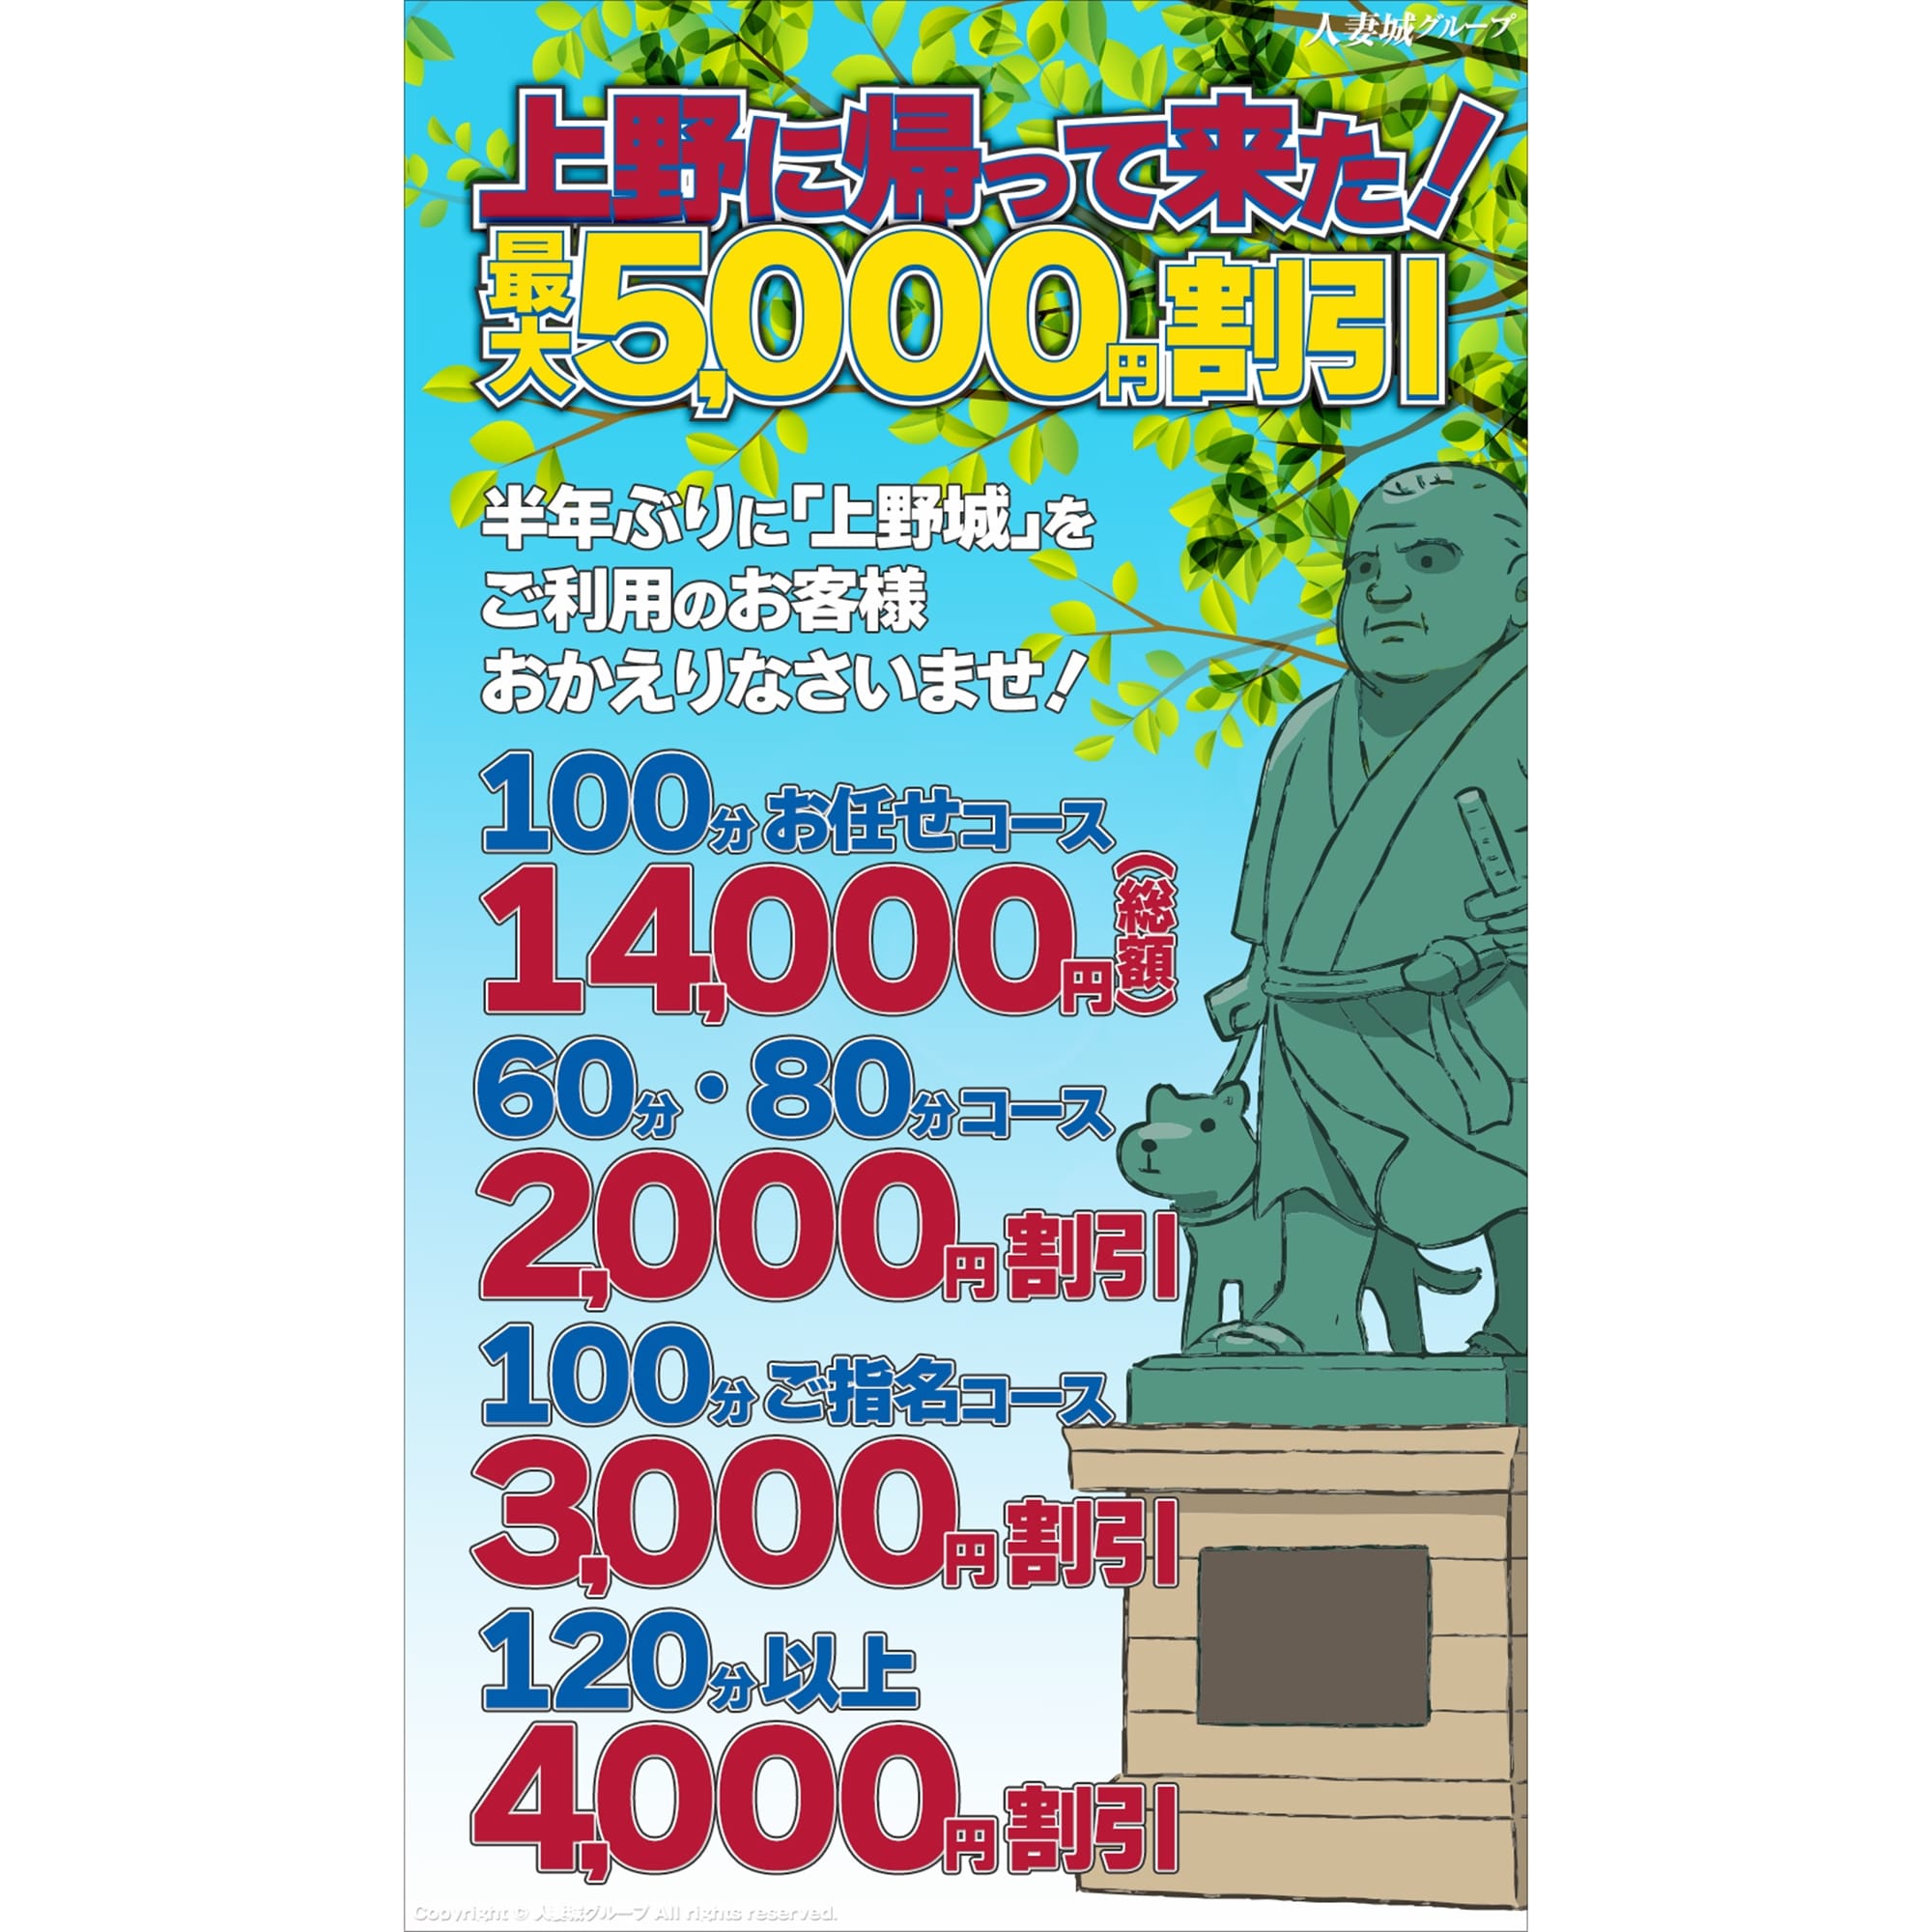 「上野に帰って来た!」04/25(木) 18:59 | 上野人妻城のお得なニュース